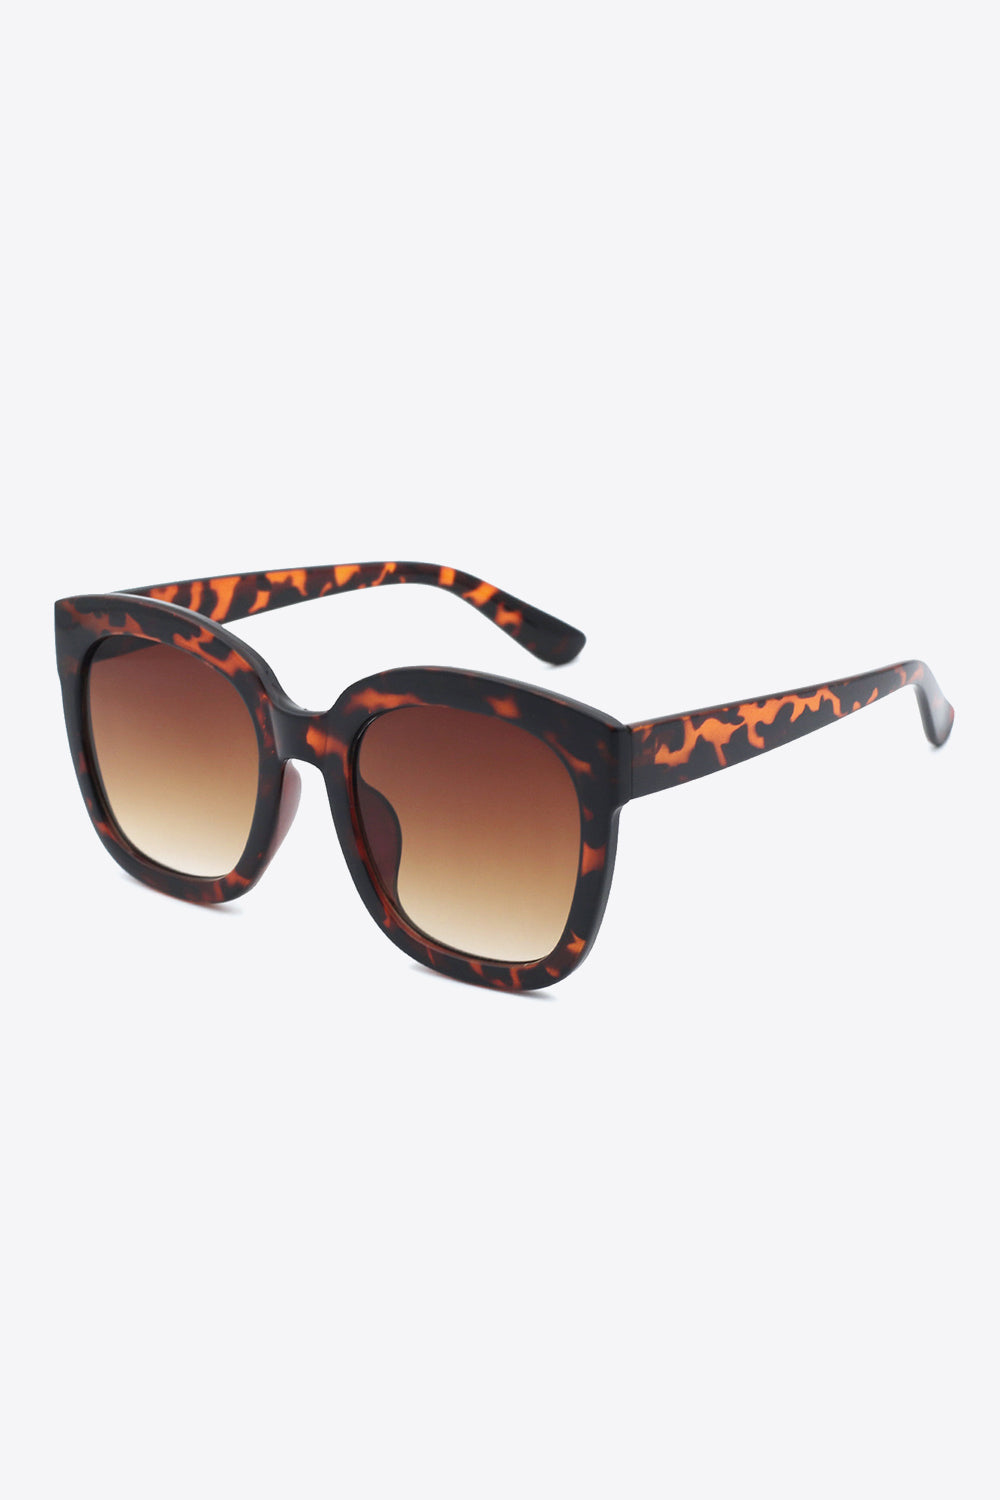 Polycarbonate Frame Square Sunglasses Tangerine One Size Sunglasses by Vim&Vigor | Vim&Vigor Boutique